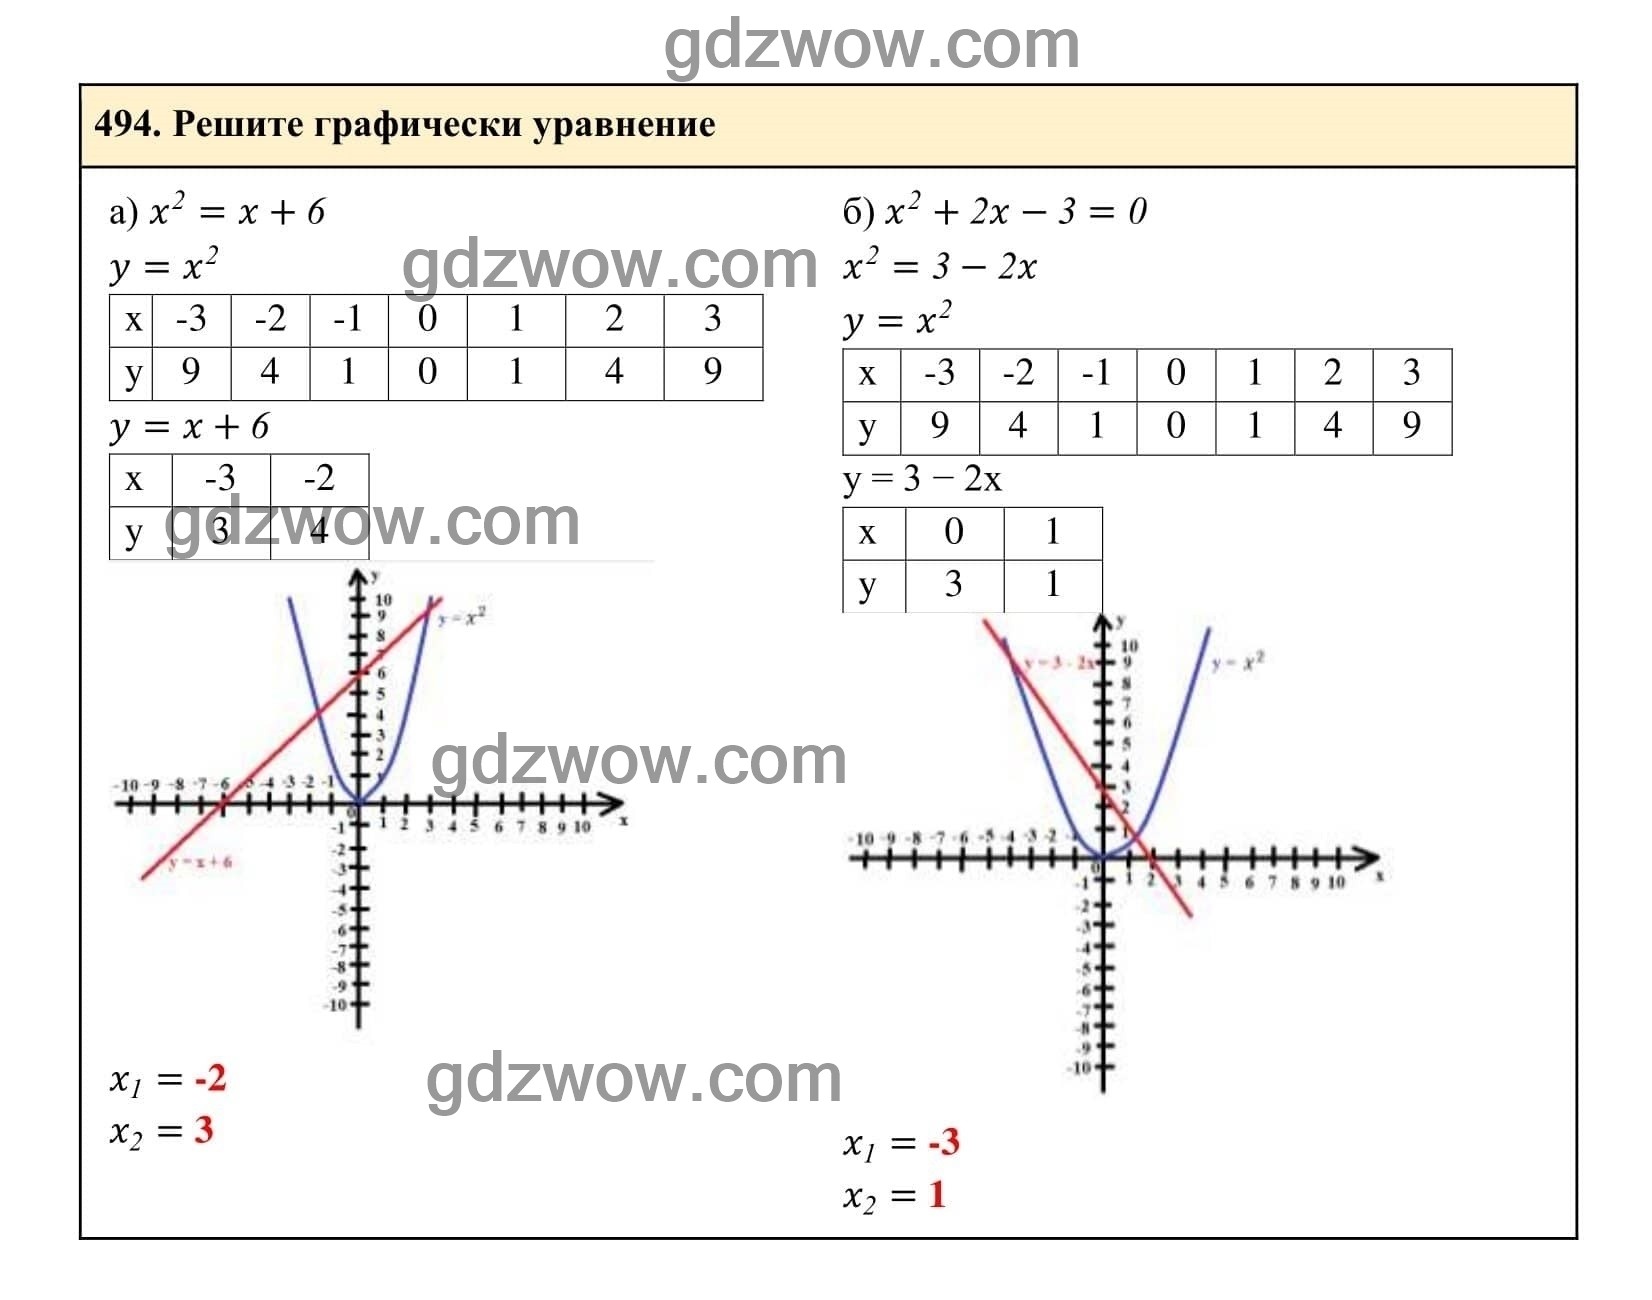 Упражнение 494 - ГДЗ по Алгебре 7 класс Учебник Макарычев (решебник) - GDZwow